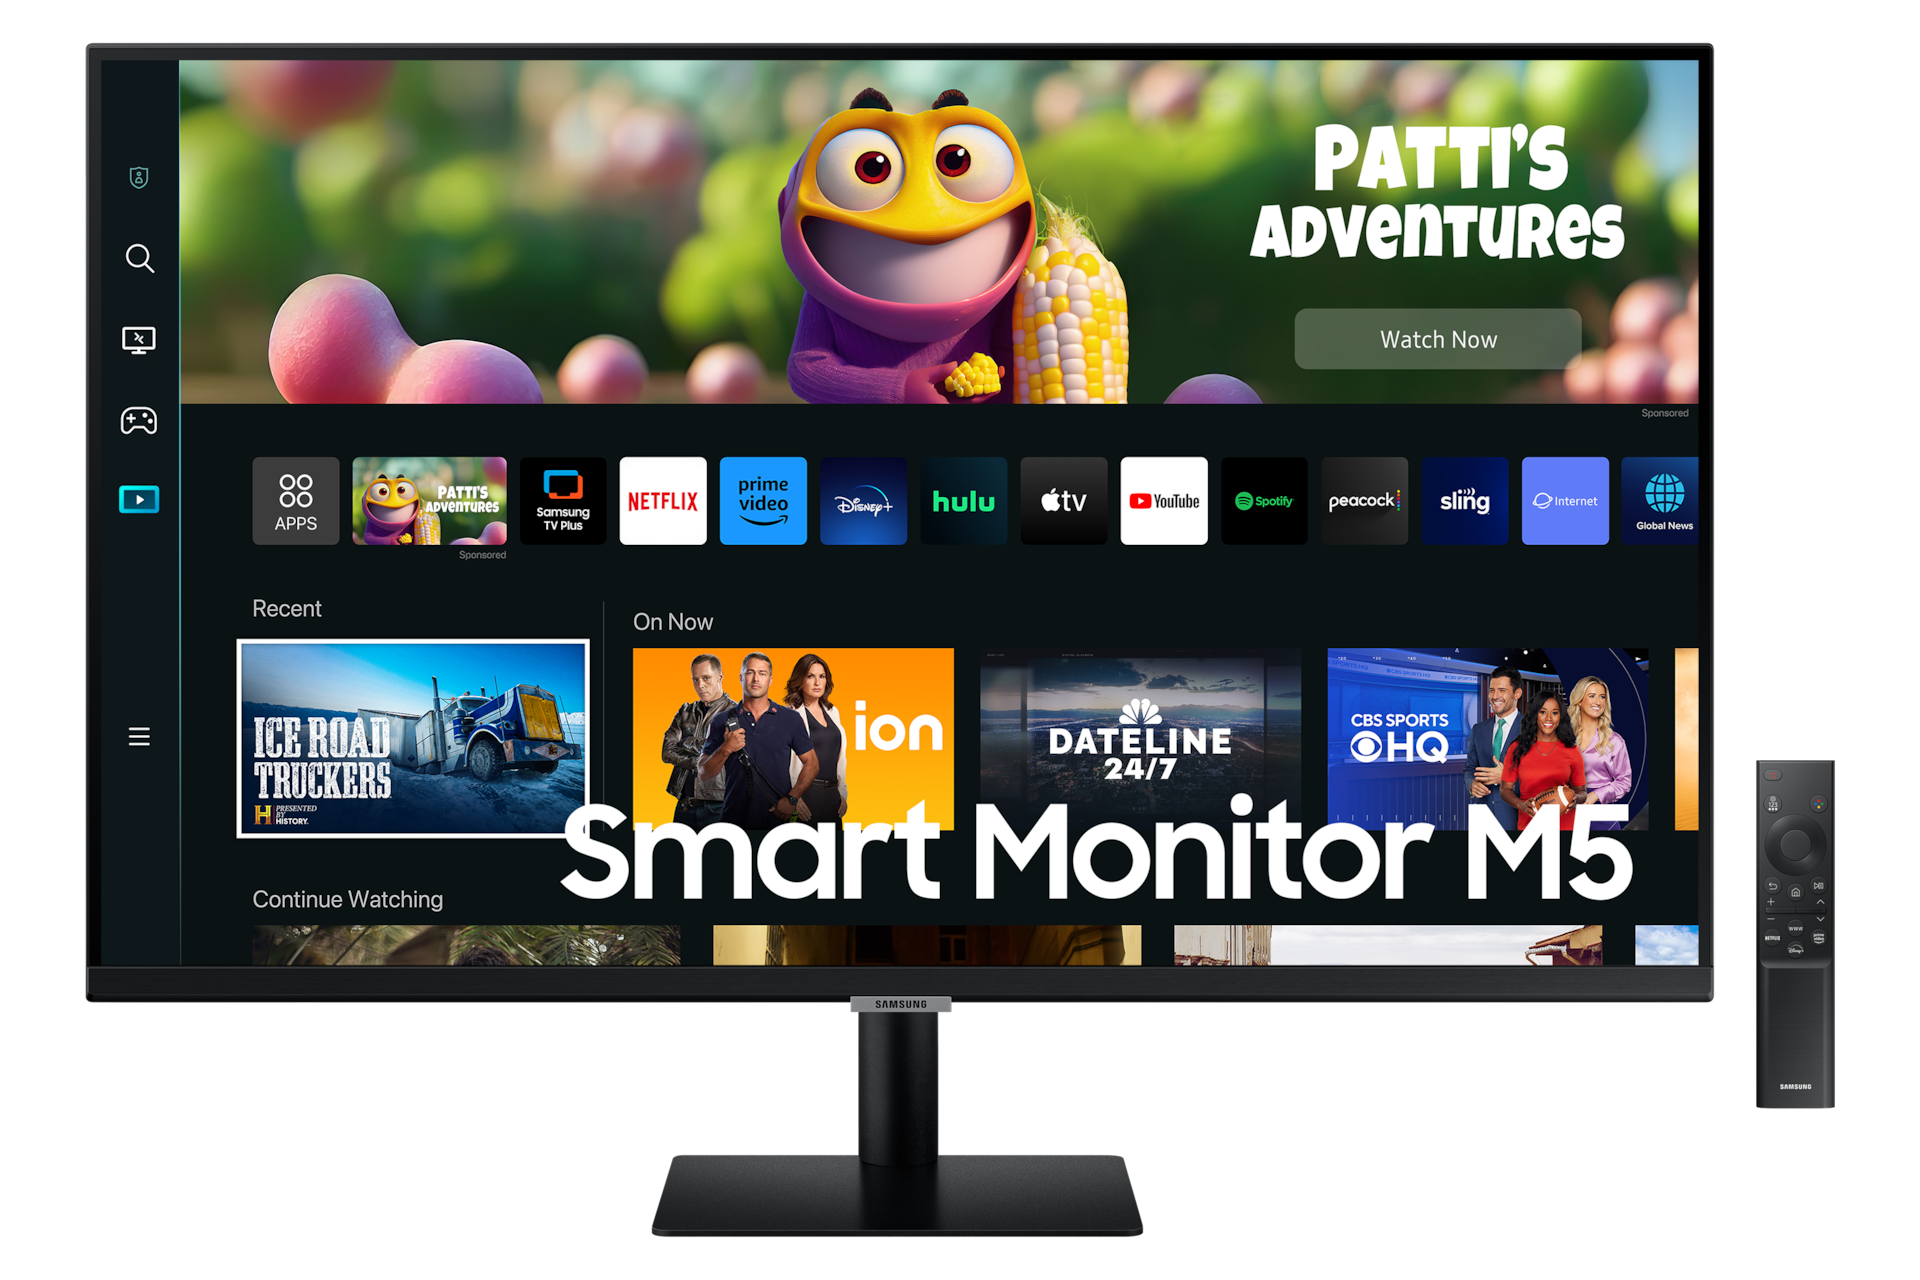 27 Smart Monitor M5 M50C Full HD LS27CM500EEXXS